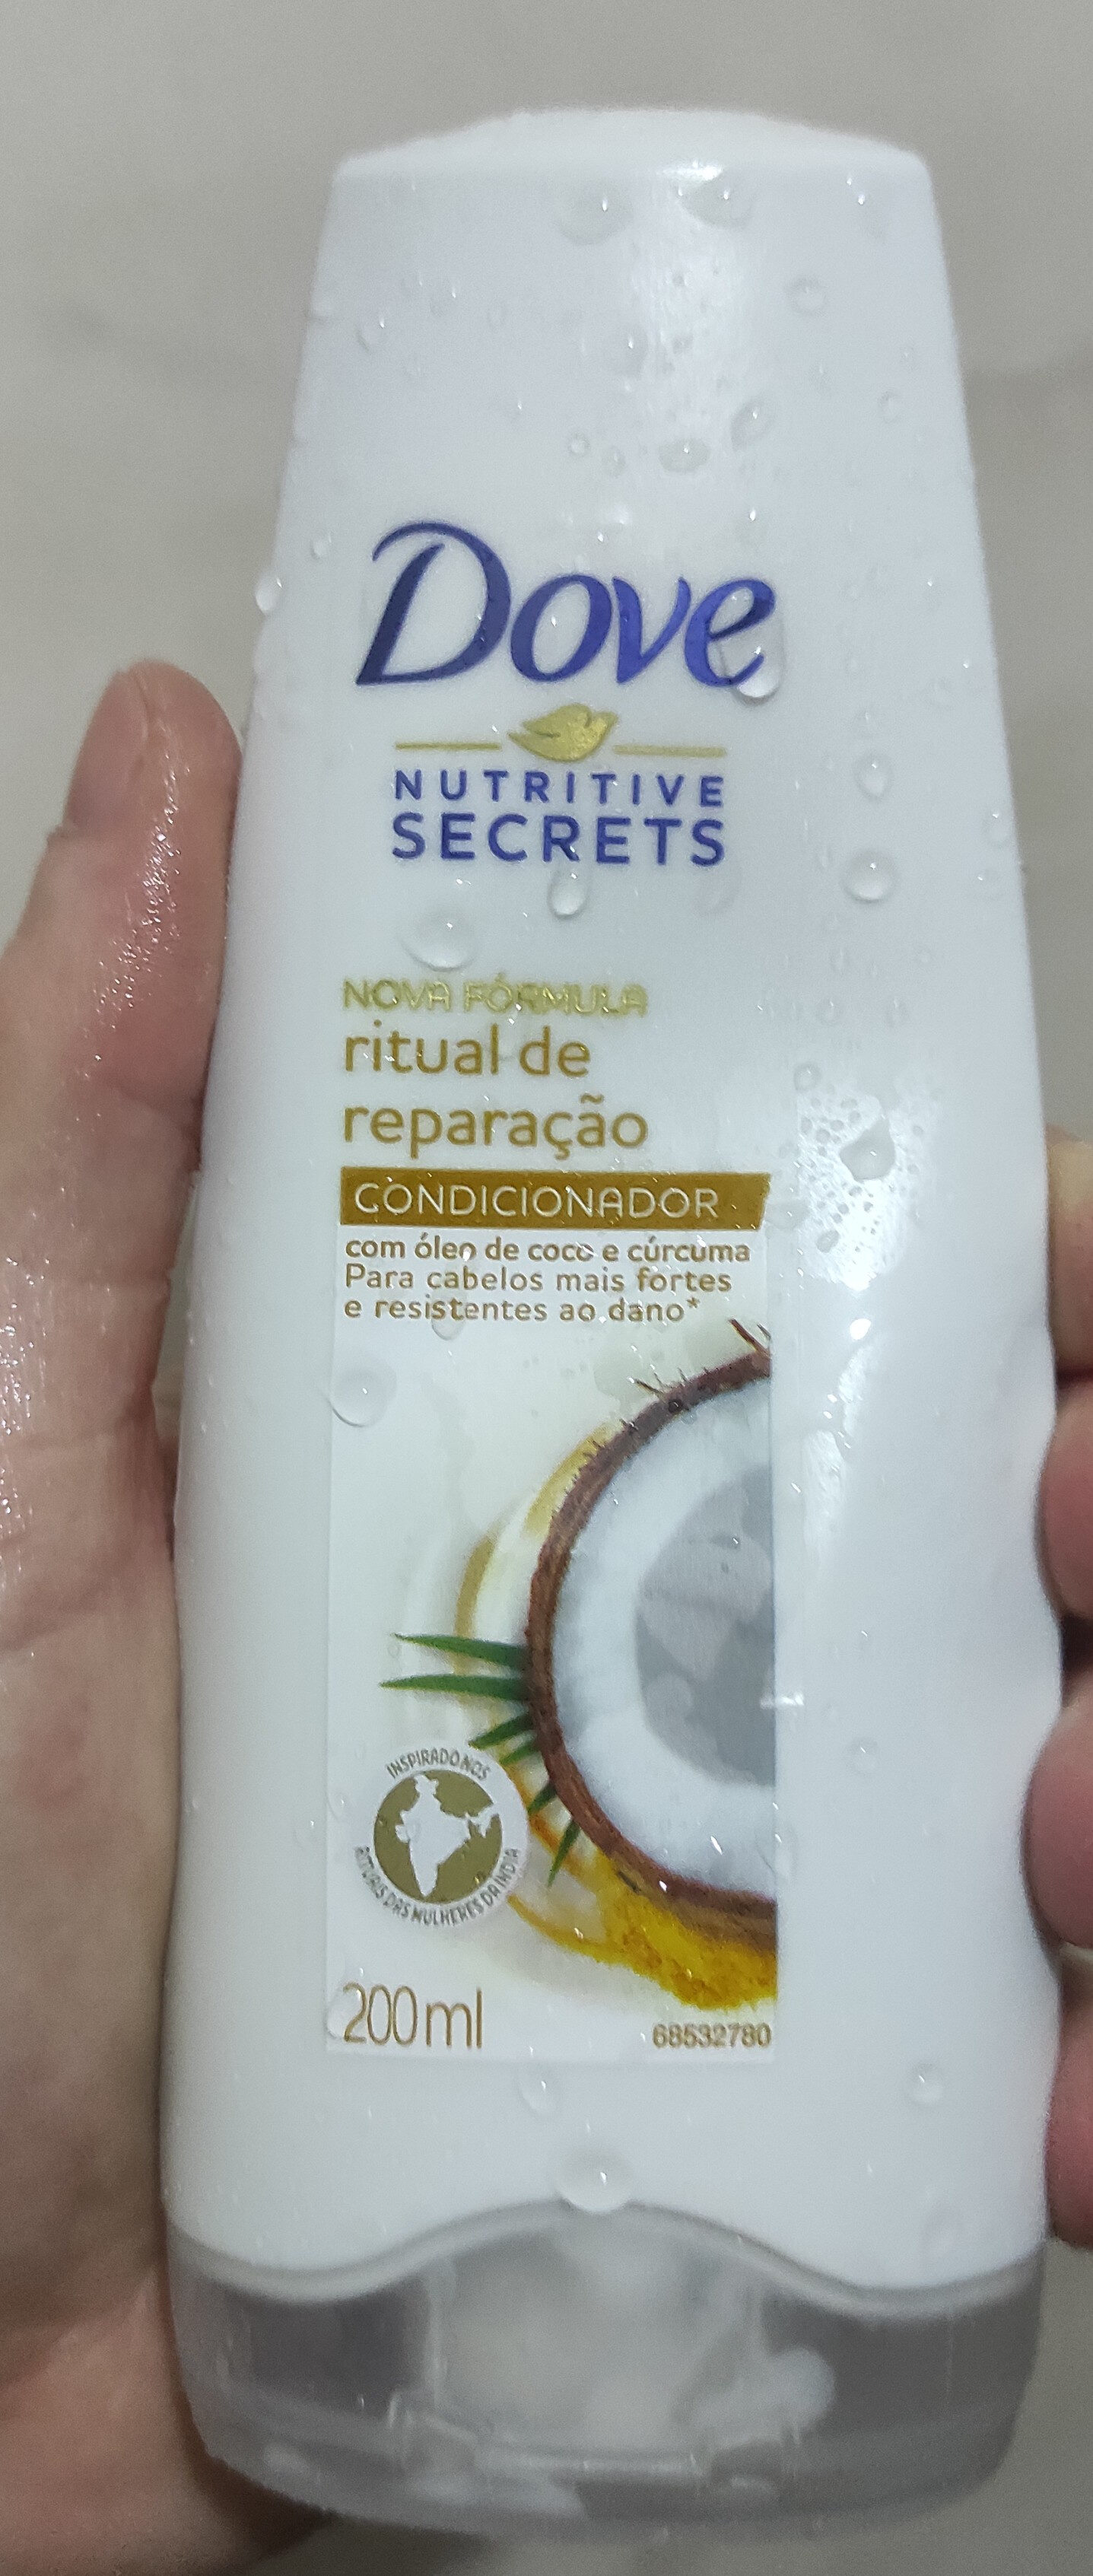 Shampoo Dove Ritual de Reparação - Produit - pt